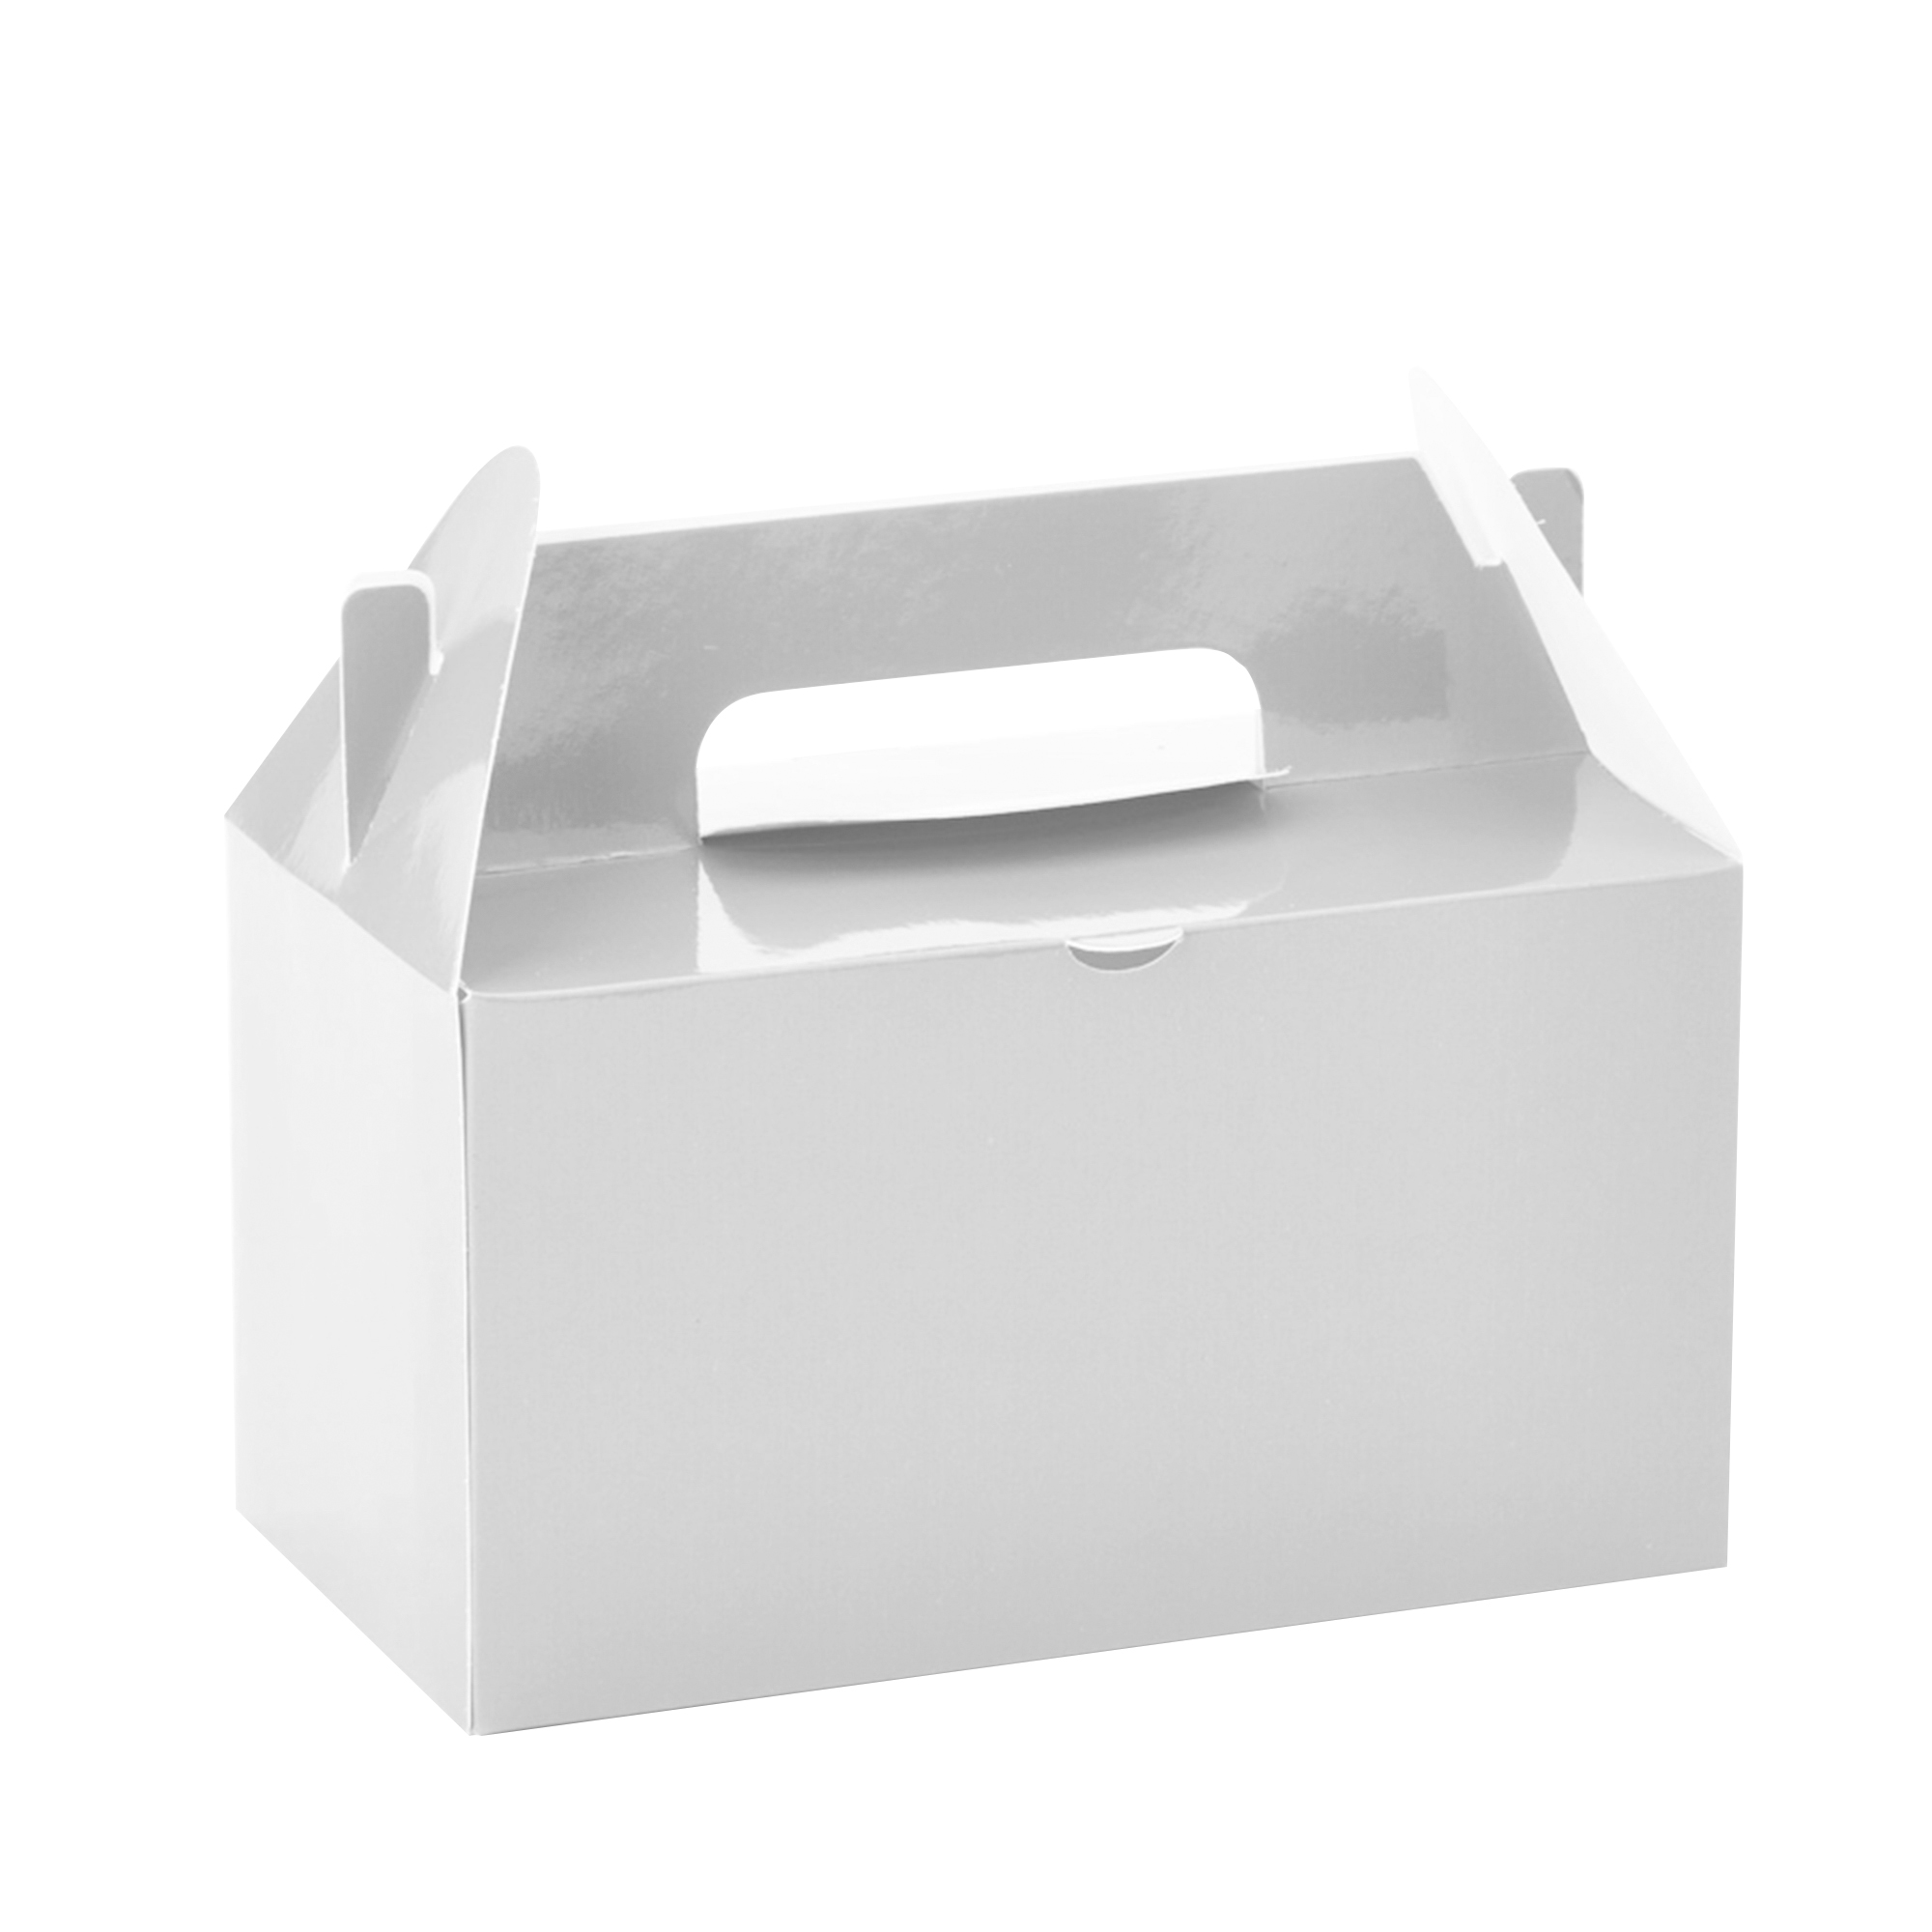 Takeout Box 12pcs/bag - White